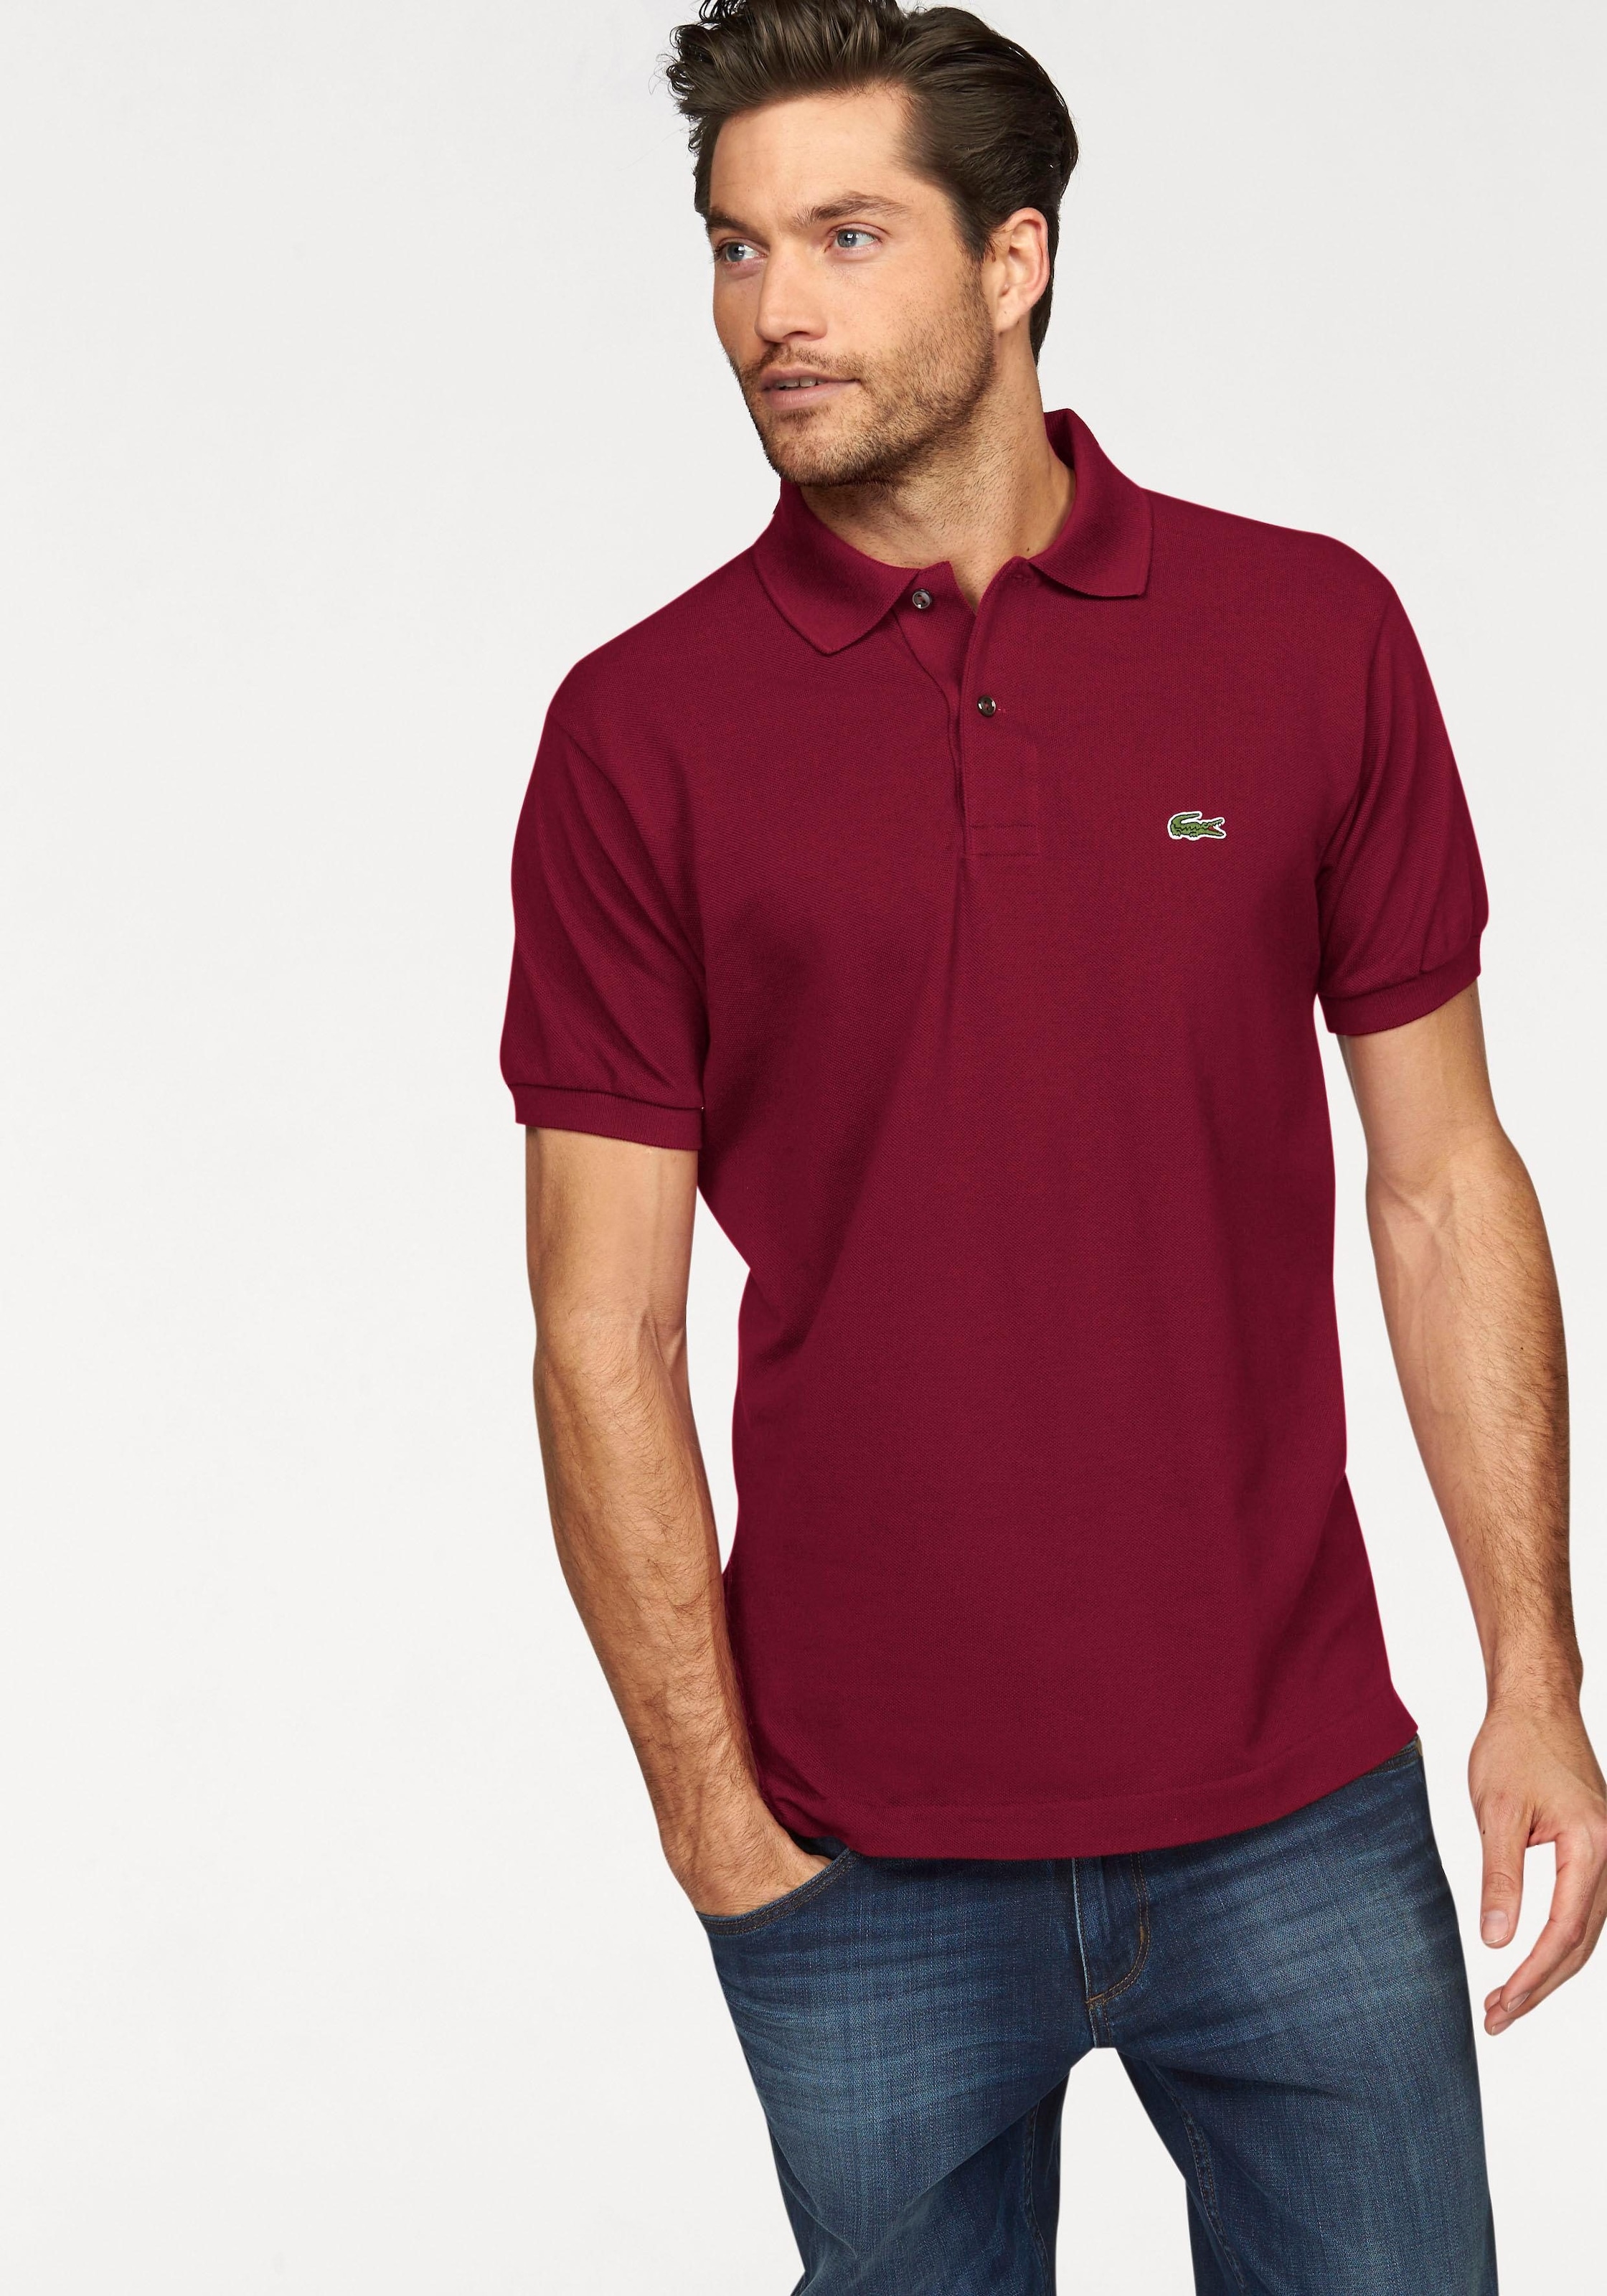 Lacoste Poloshirt, Piqué online shoppen bei OTTO | Poloshirts